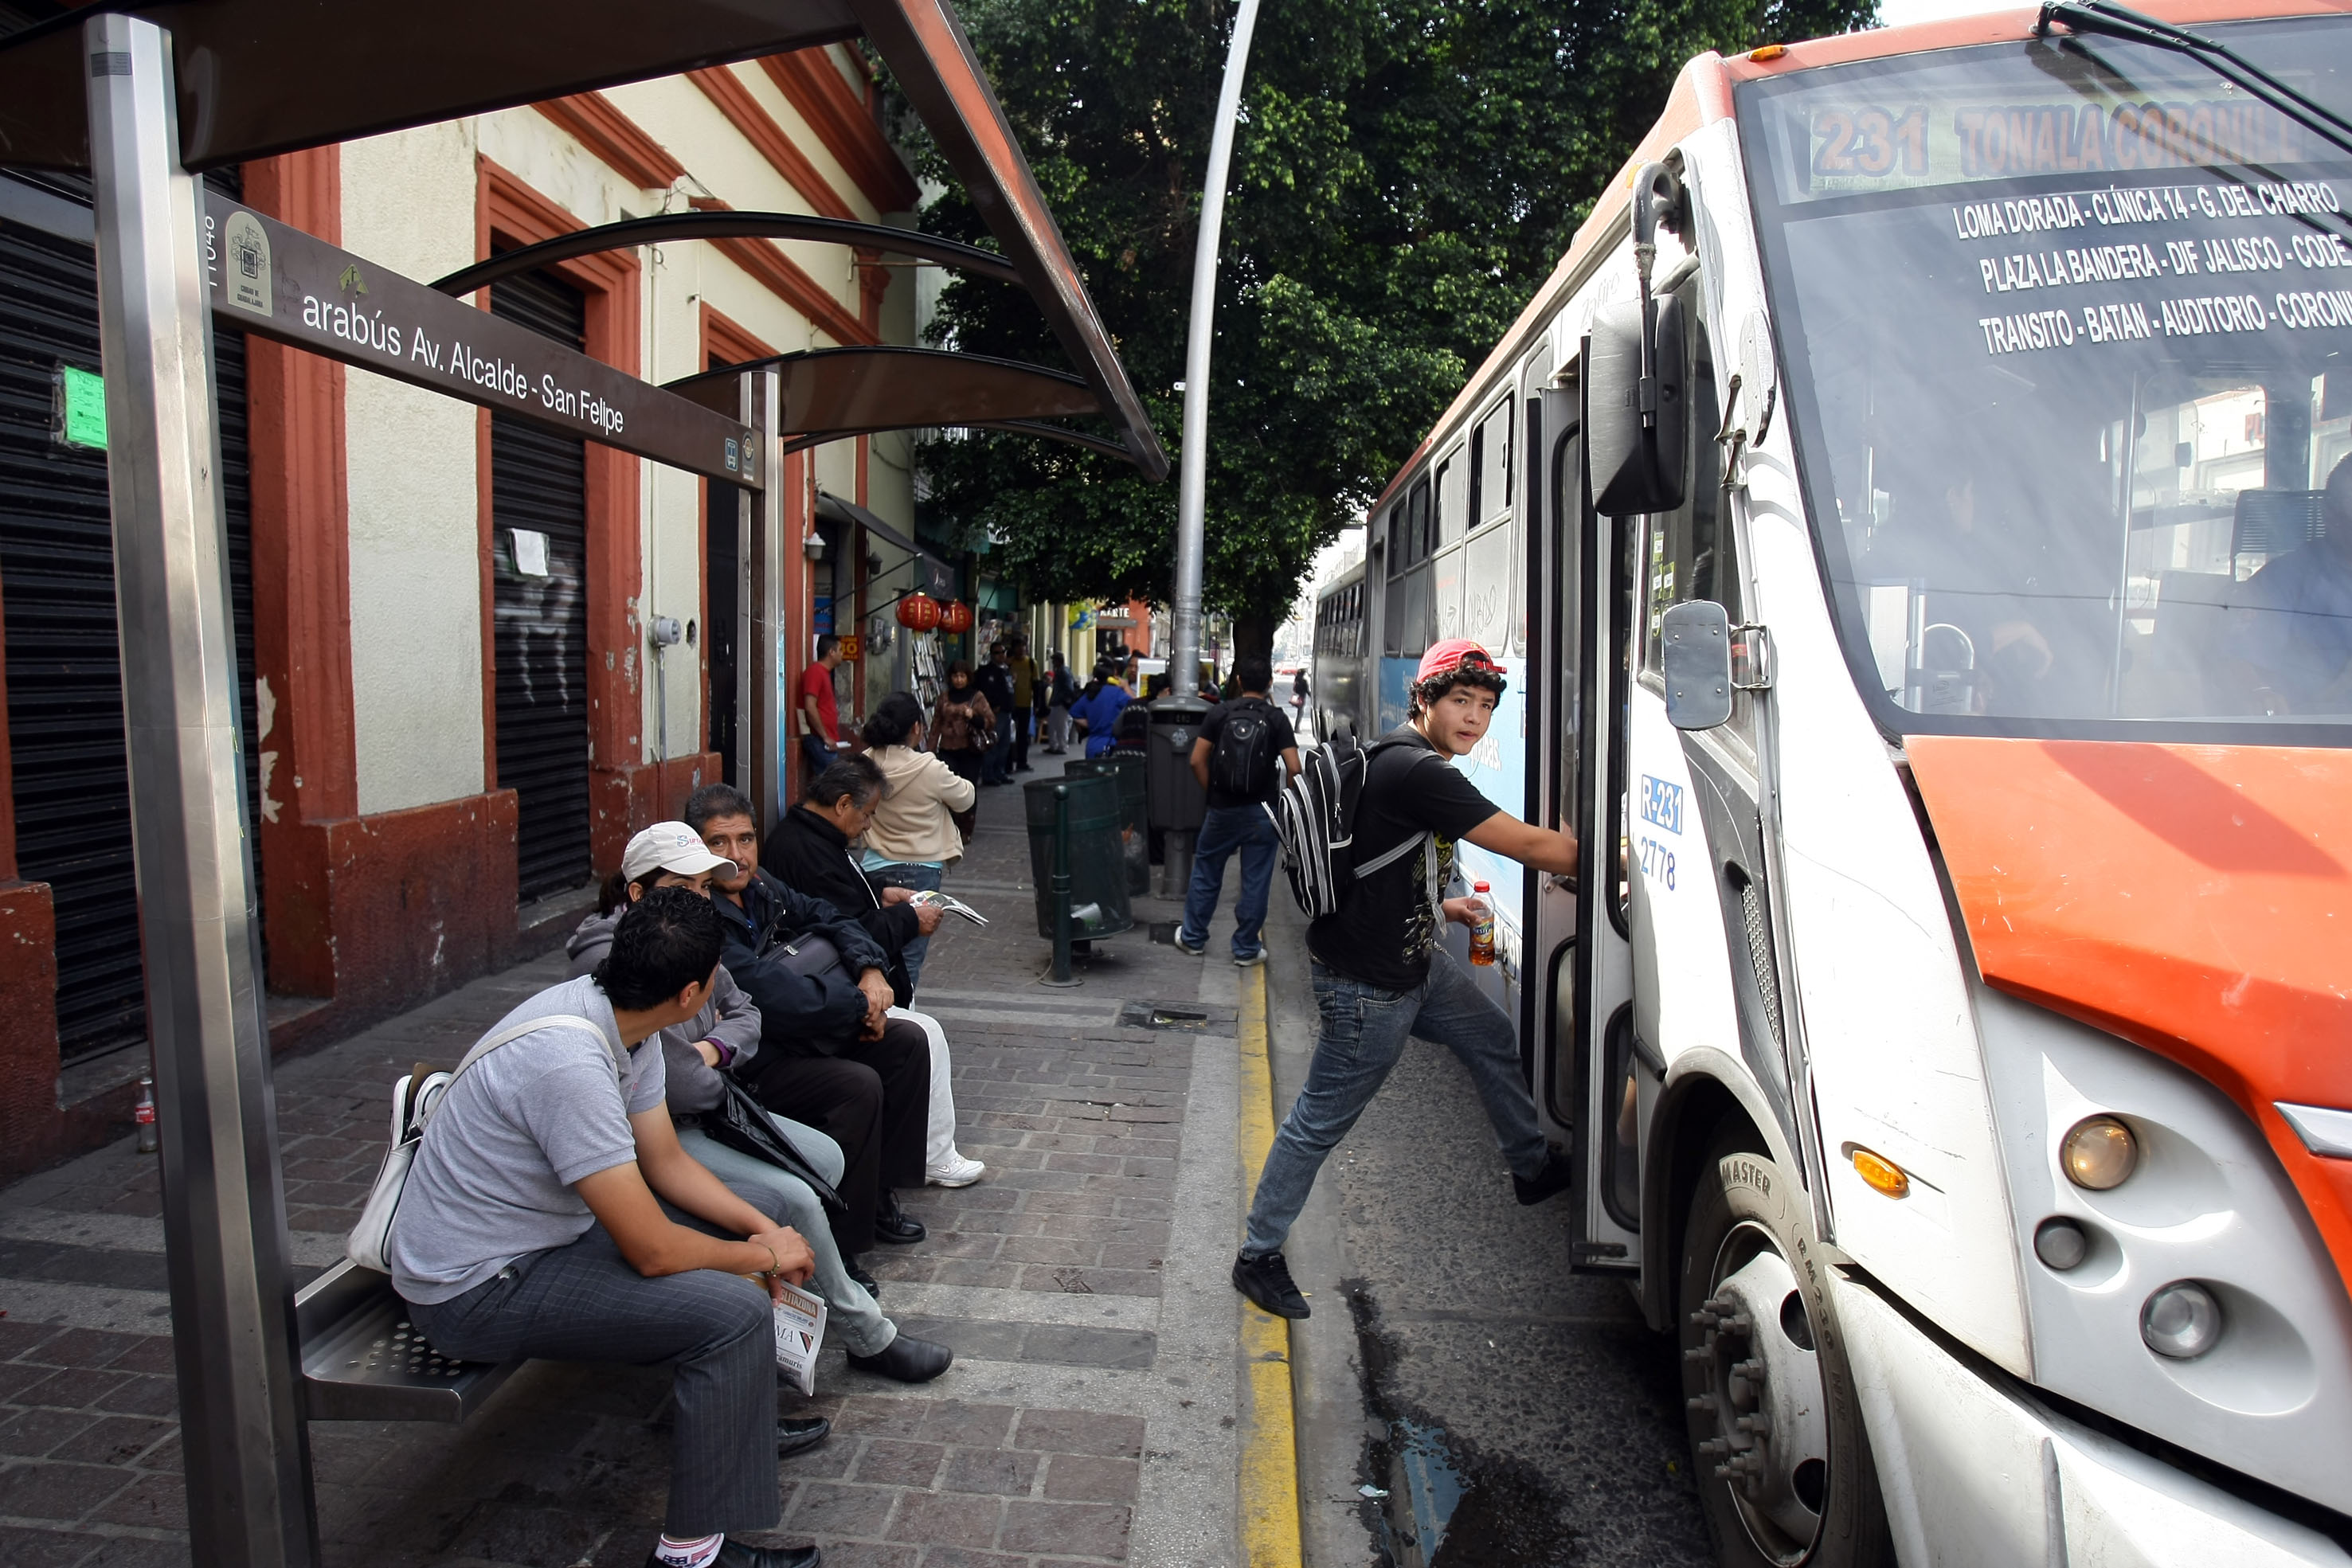  Cajeros y transporte público, donde más inseguros se sienten los mexicanos